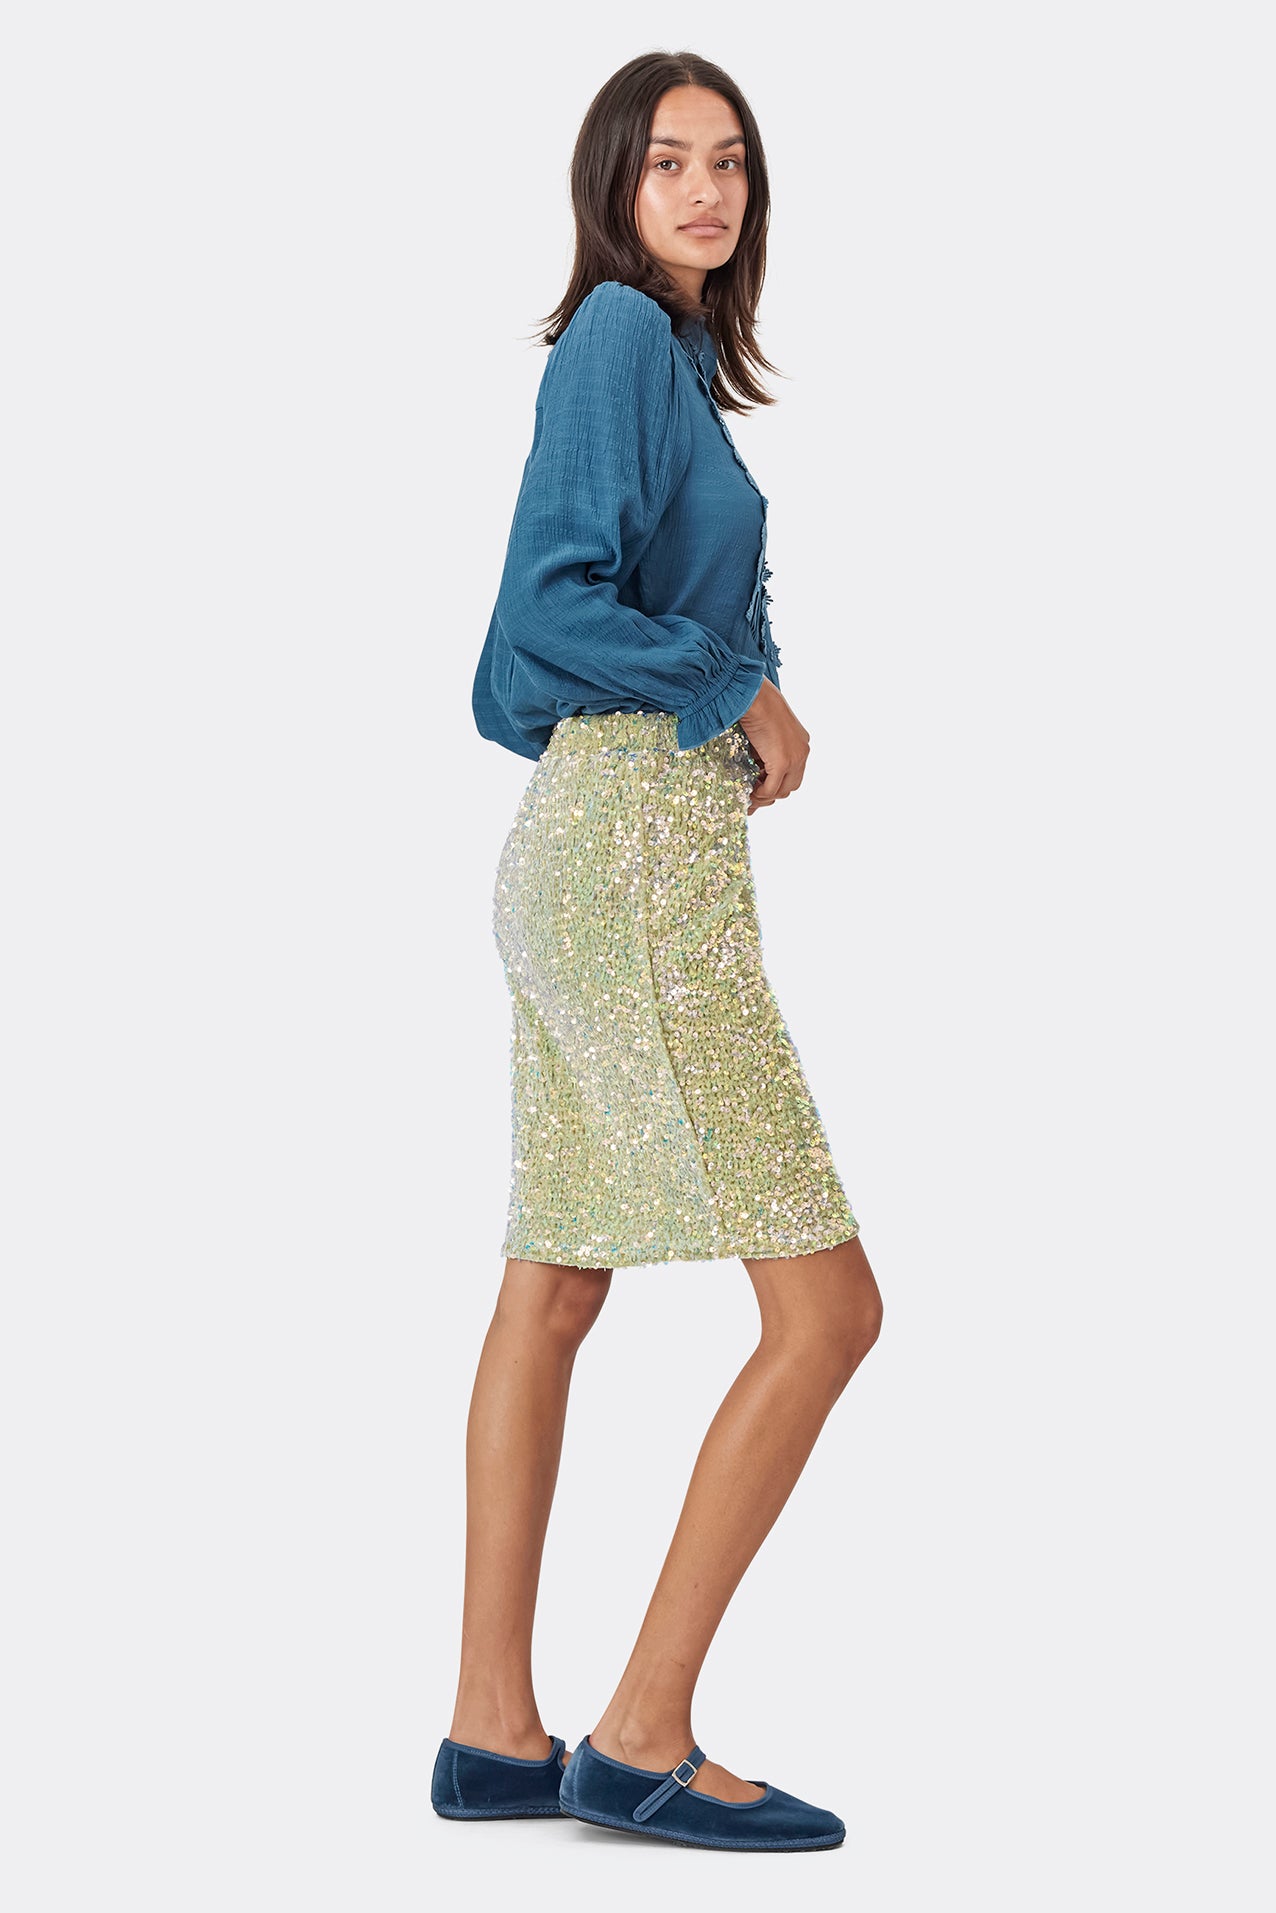 Lollys Laundry AnnaLL Short Skirt Skirt 41 Light Green